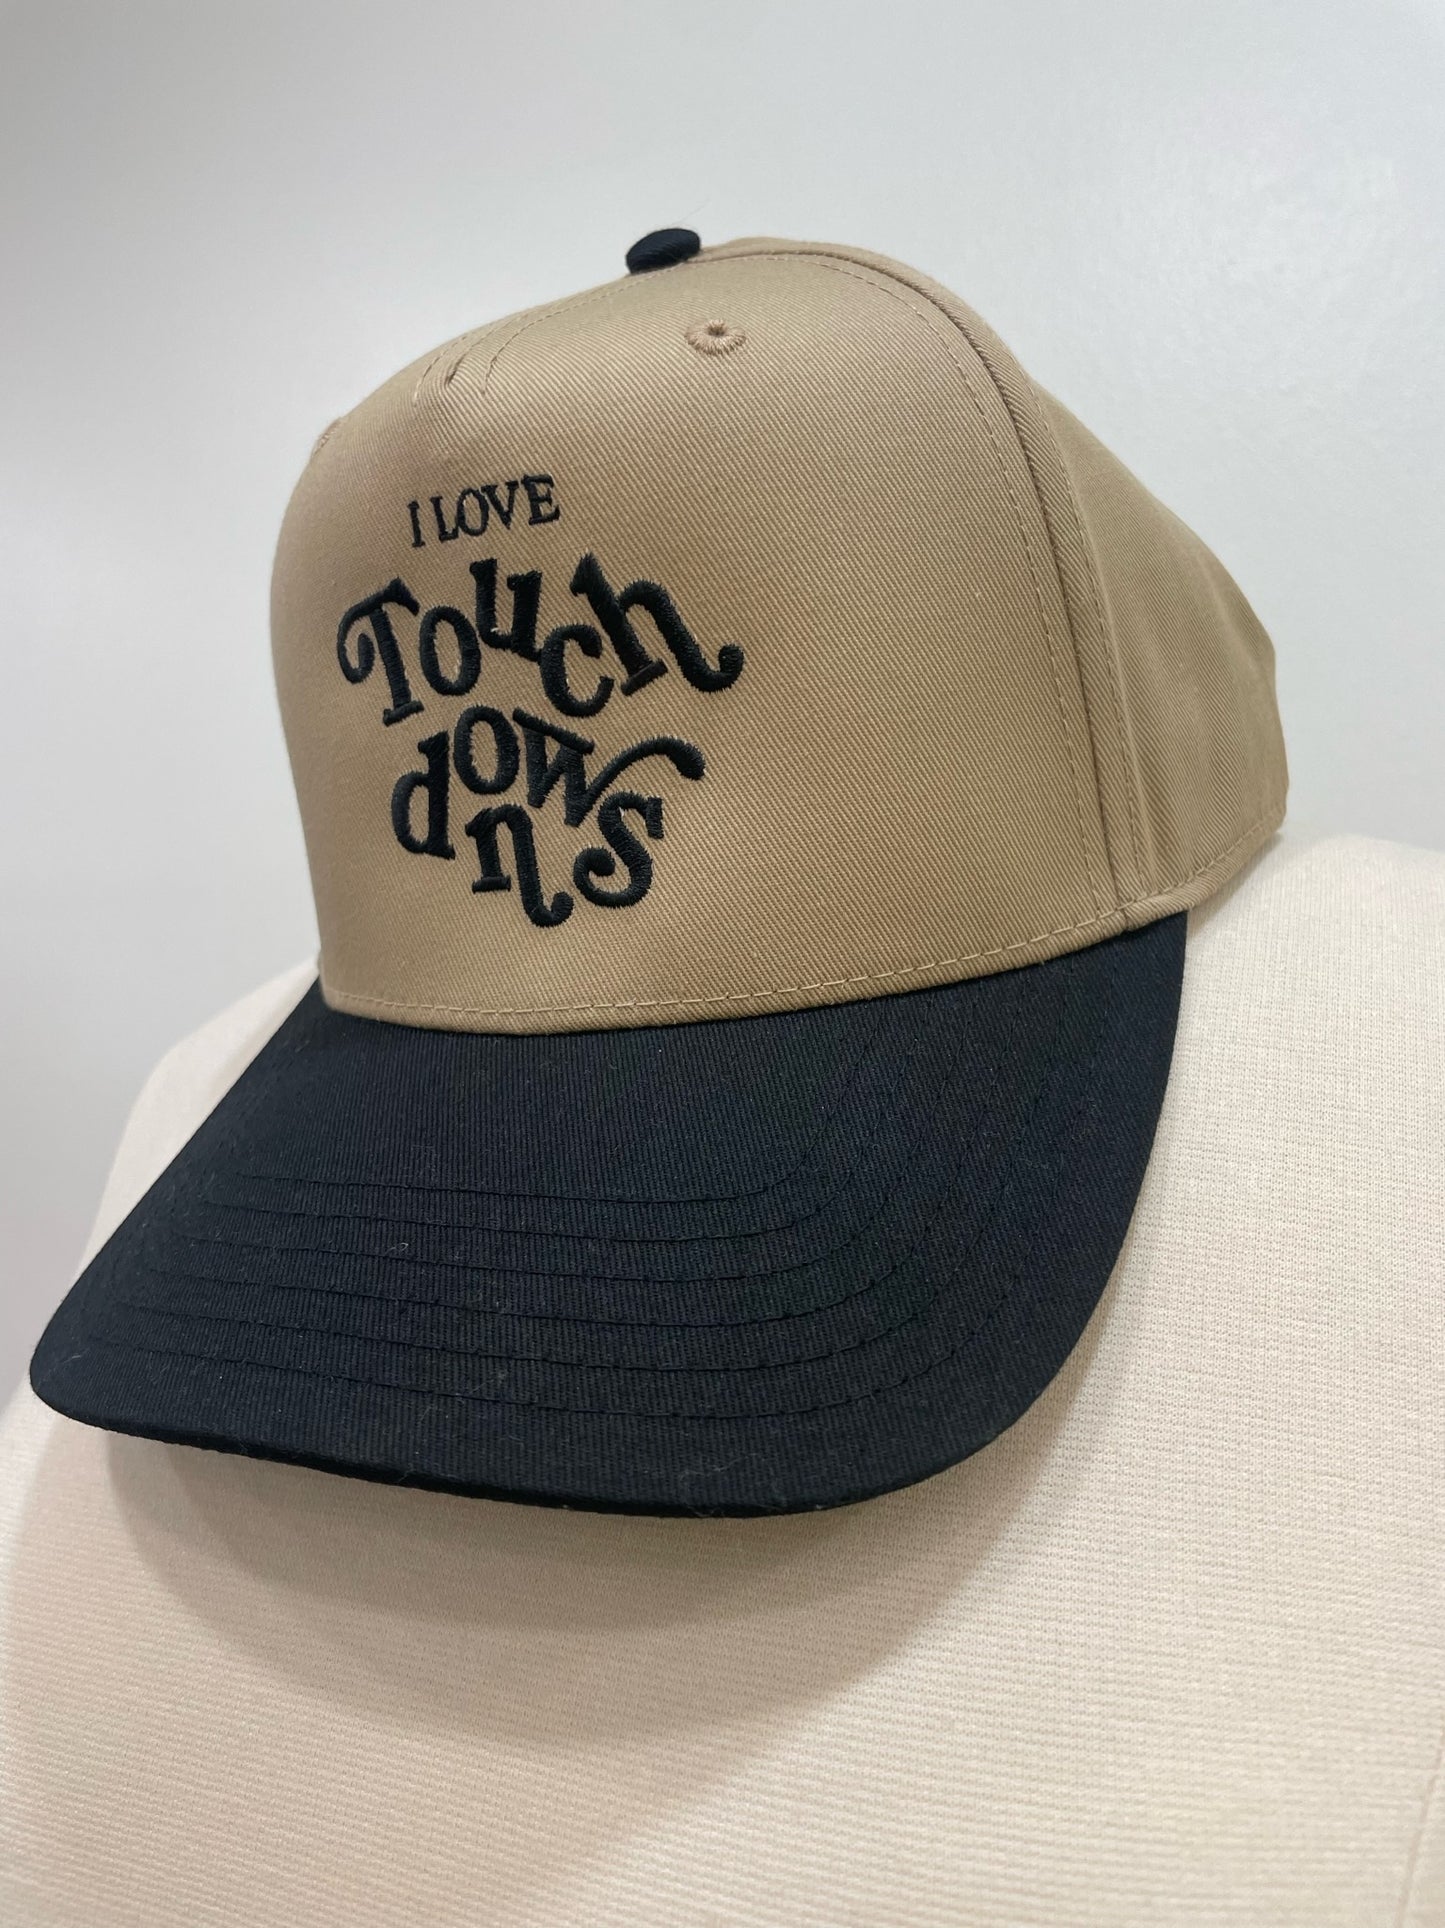 I Love Touchdowns - Trucker Hat